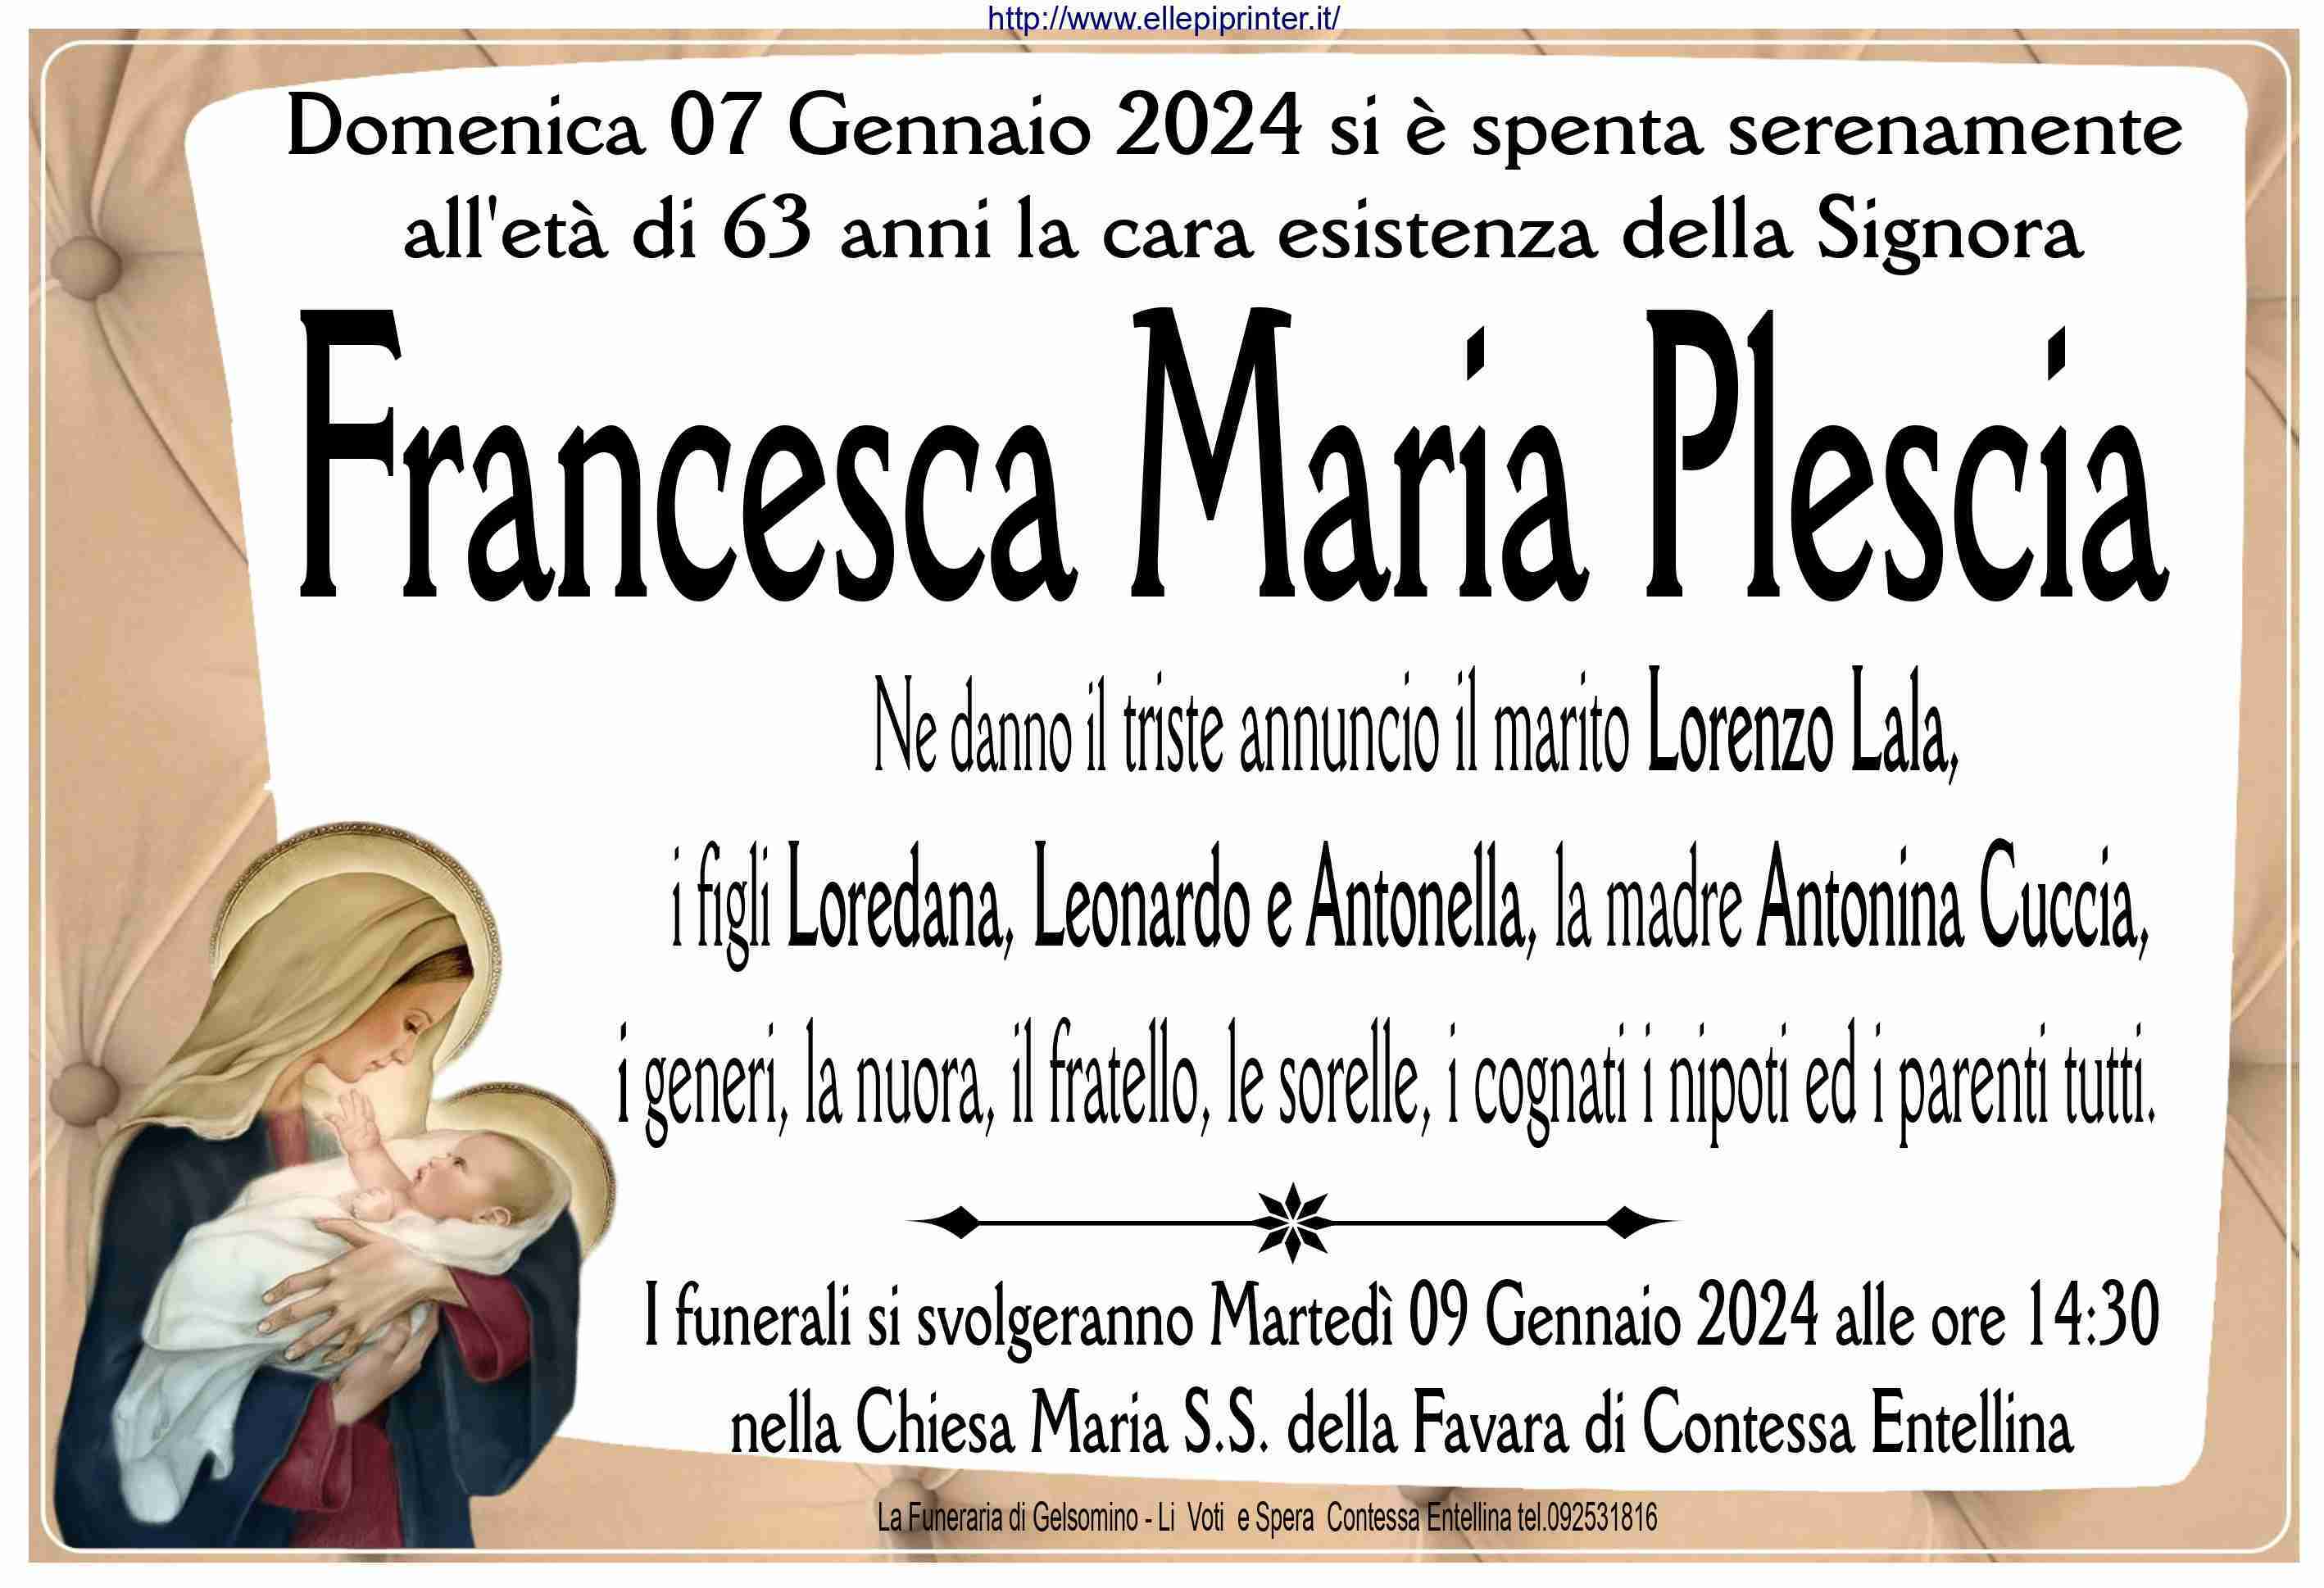 Francesca Maria Plescia